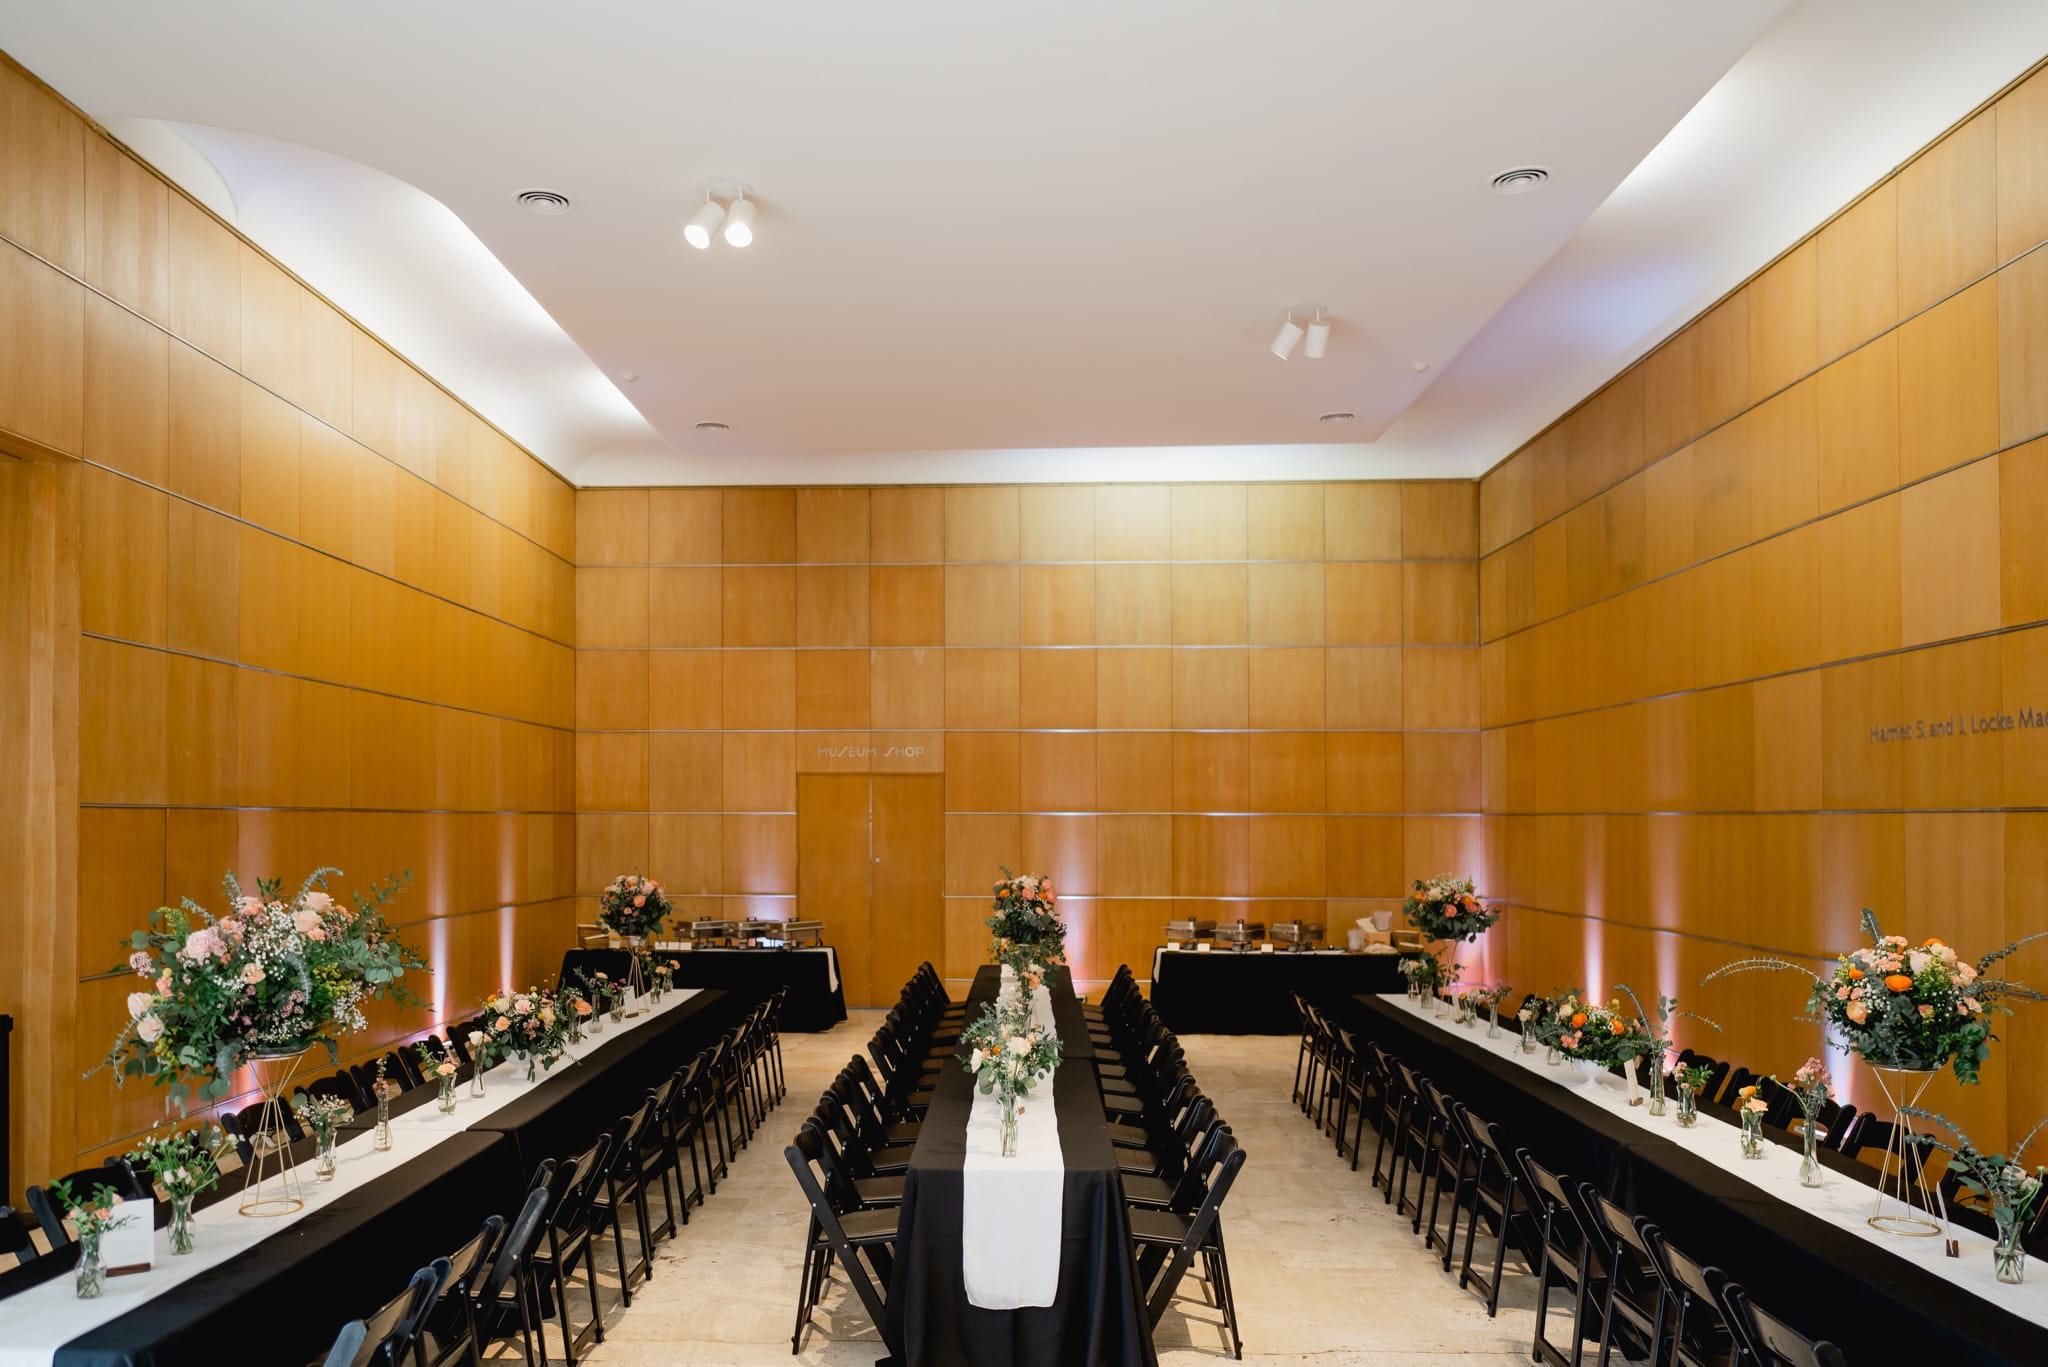 des moines art center wedding reception detail photos